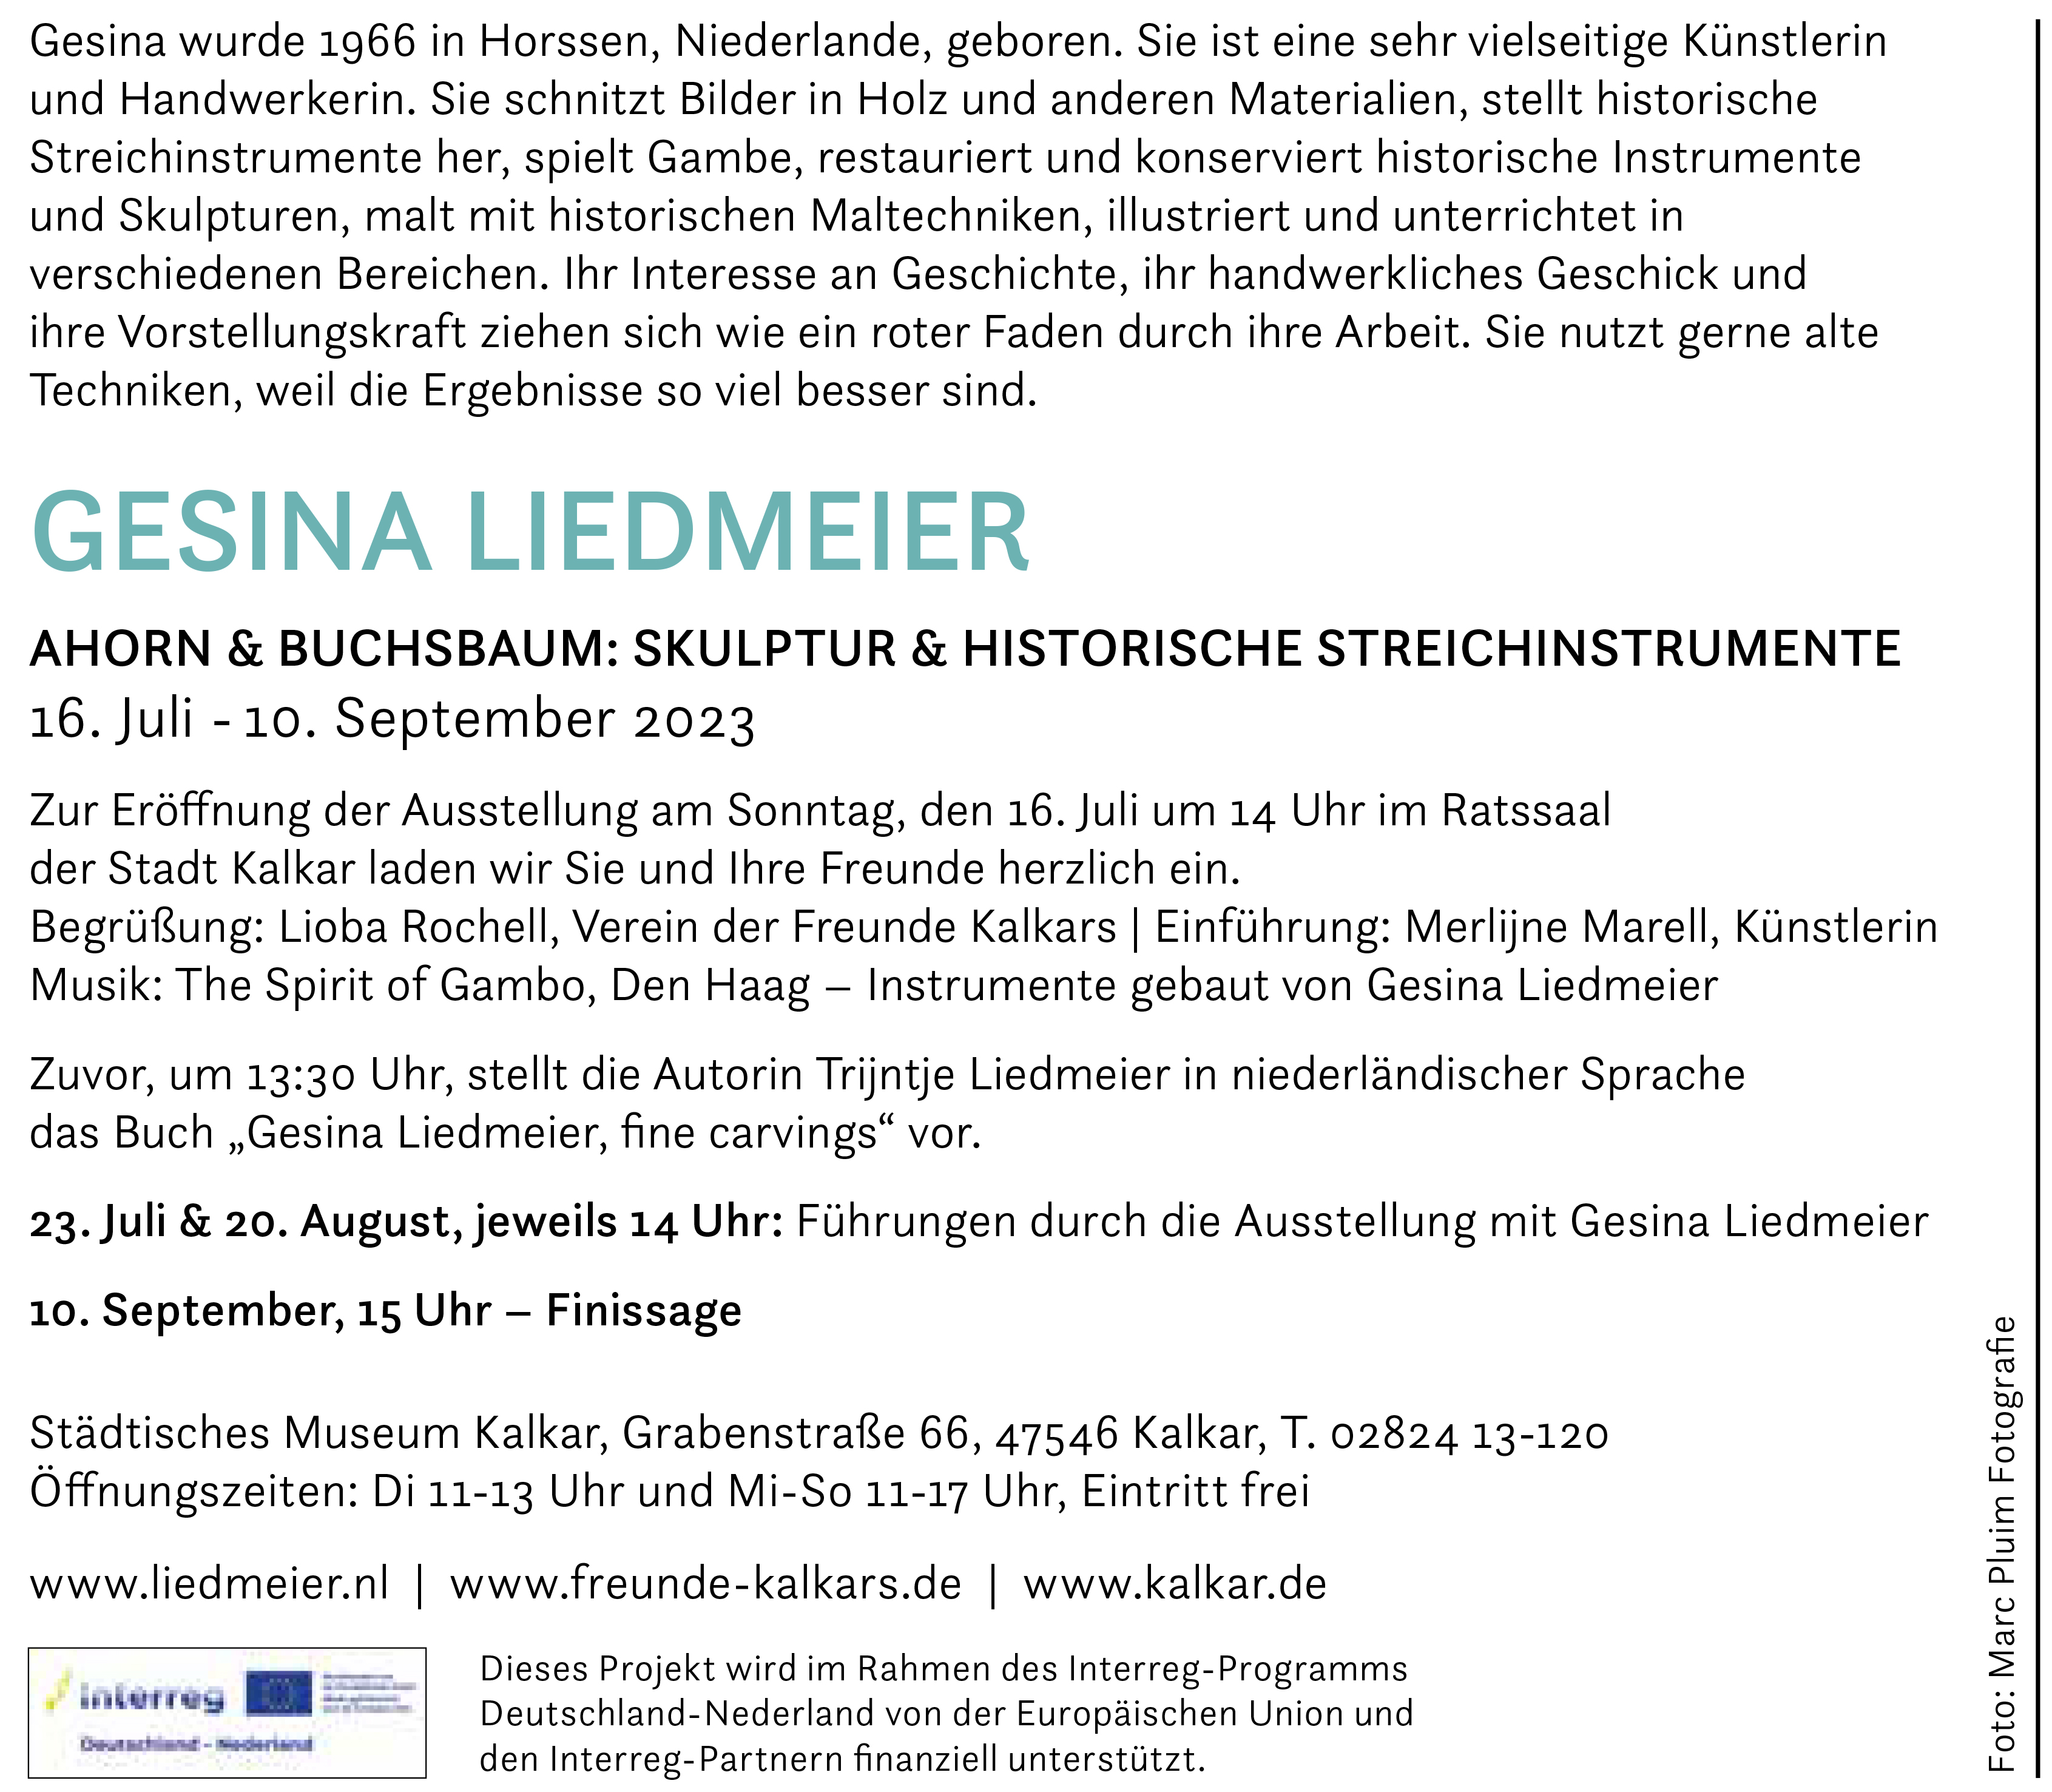 Einladung zur Ausstellung von Gesina Liedmeier im Städtischen Museum Kalkar.